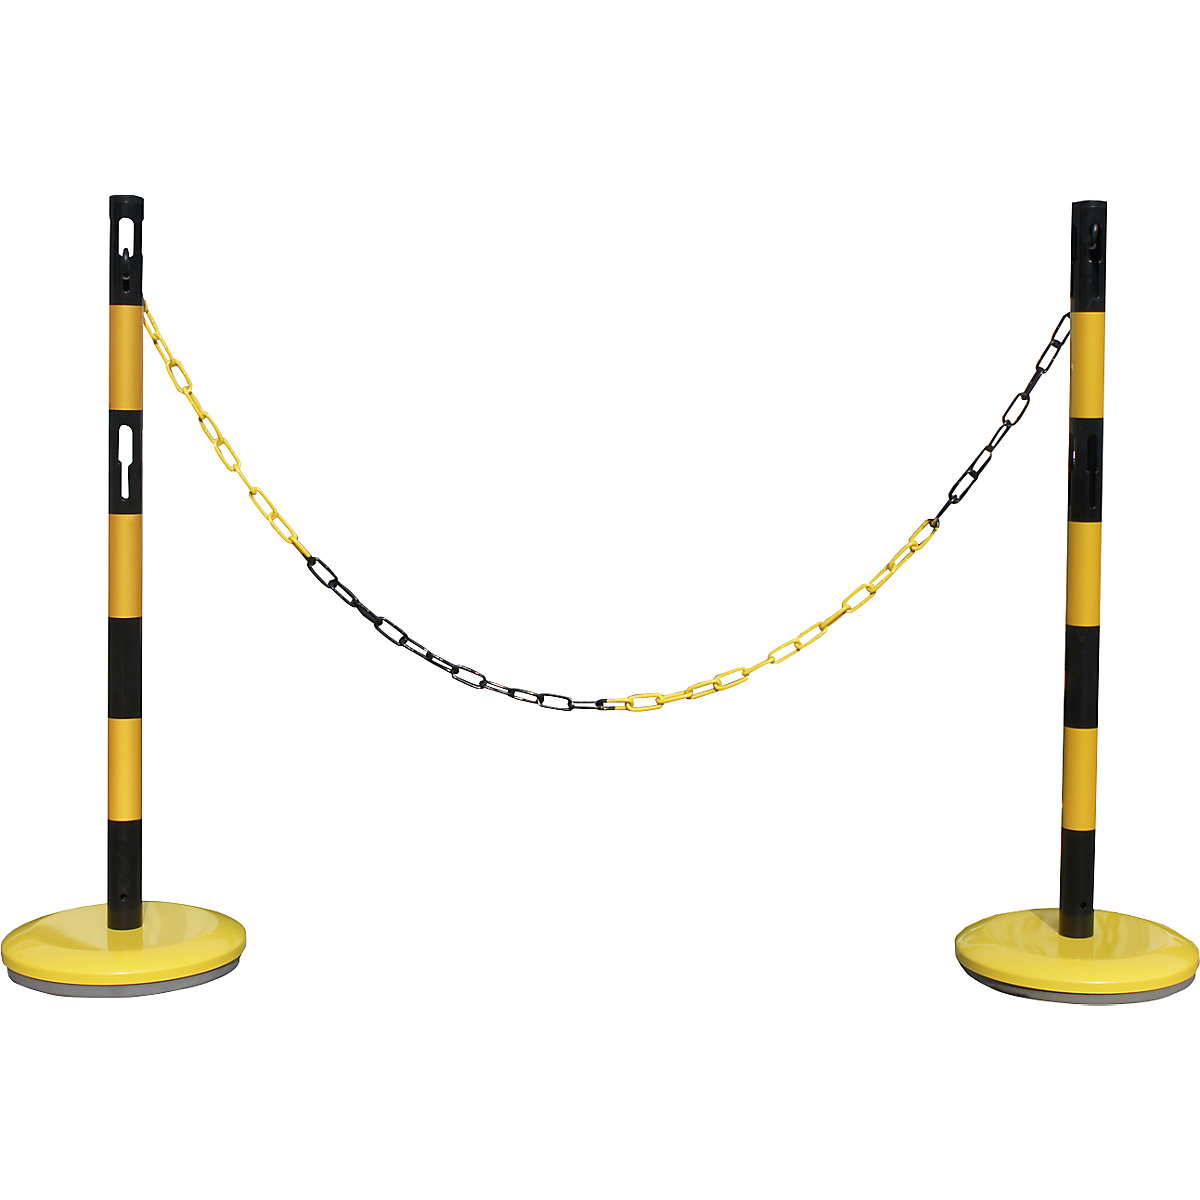 Juego de postes barrera con cadena – VISO, 2 postes, cadena de 2,5 m, amarillo / negro-5